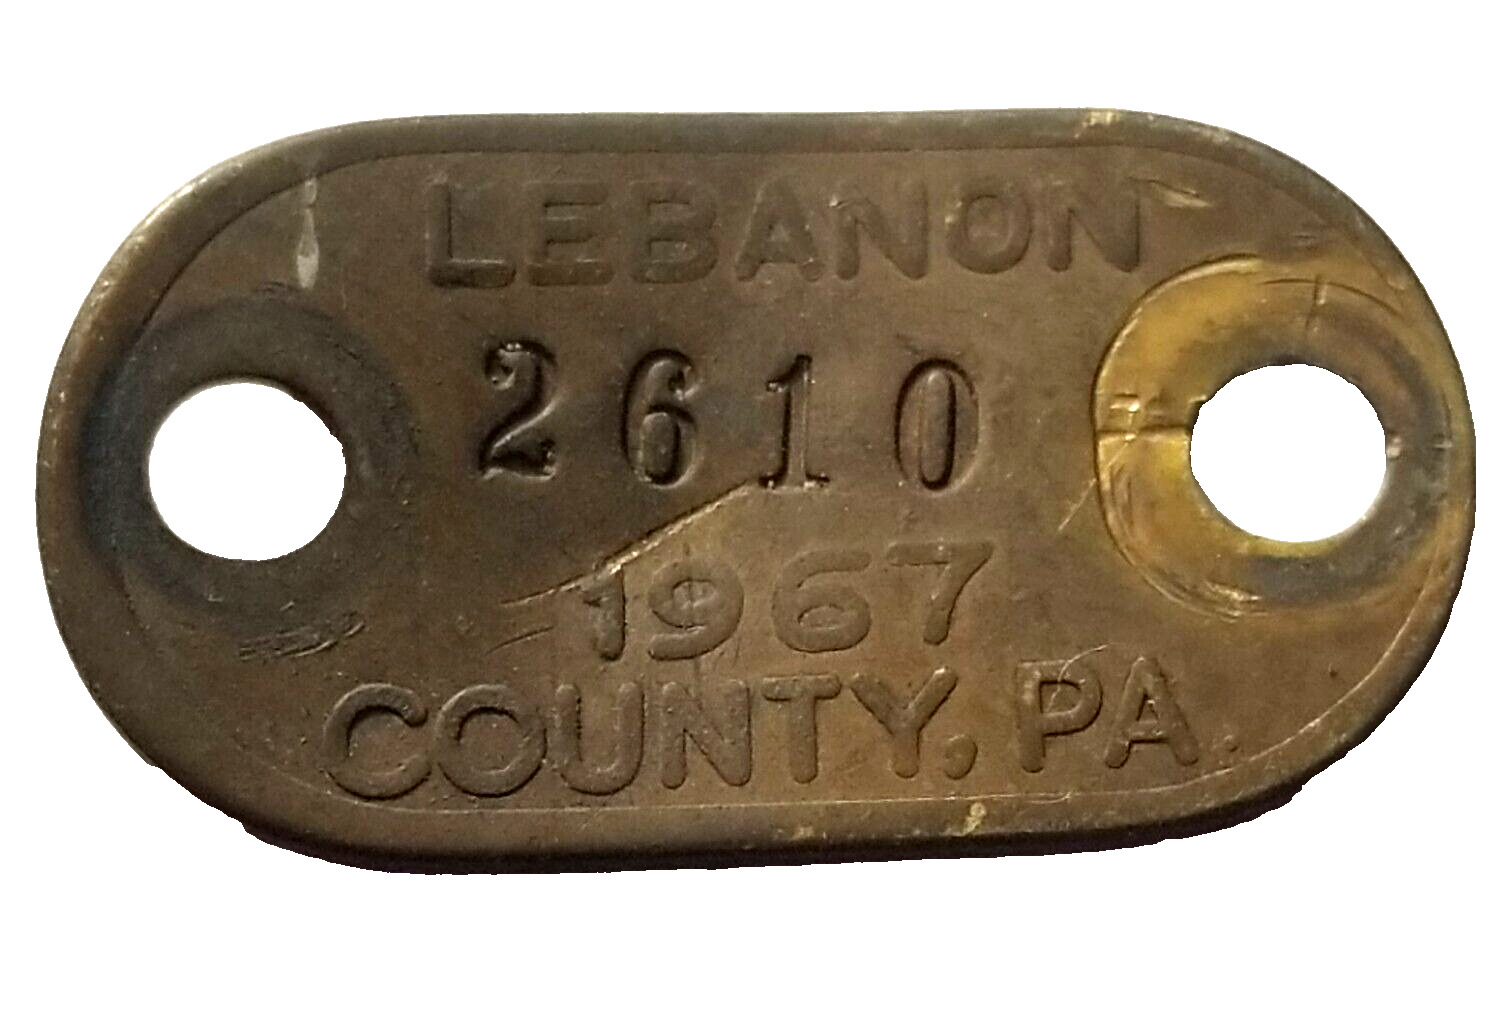 1967 Pennsylvania Dog Metal License Rabies Tag VINTAGE LEBANON COUNTY PA - #2610